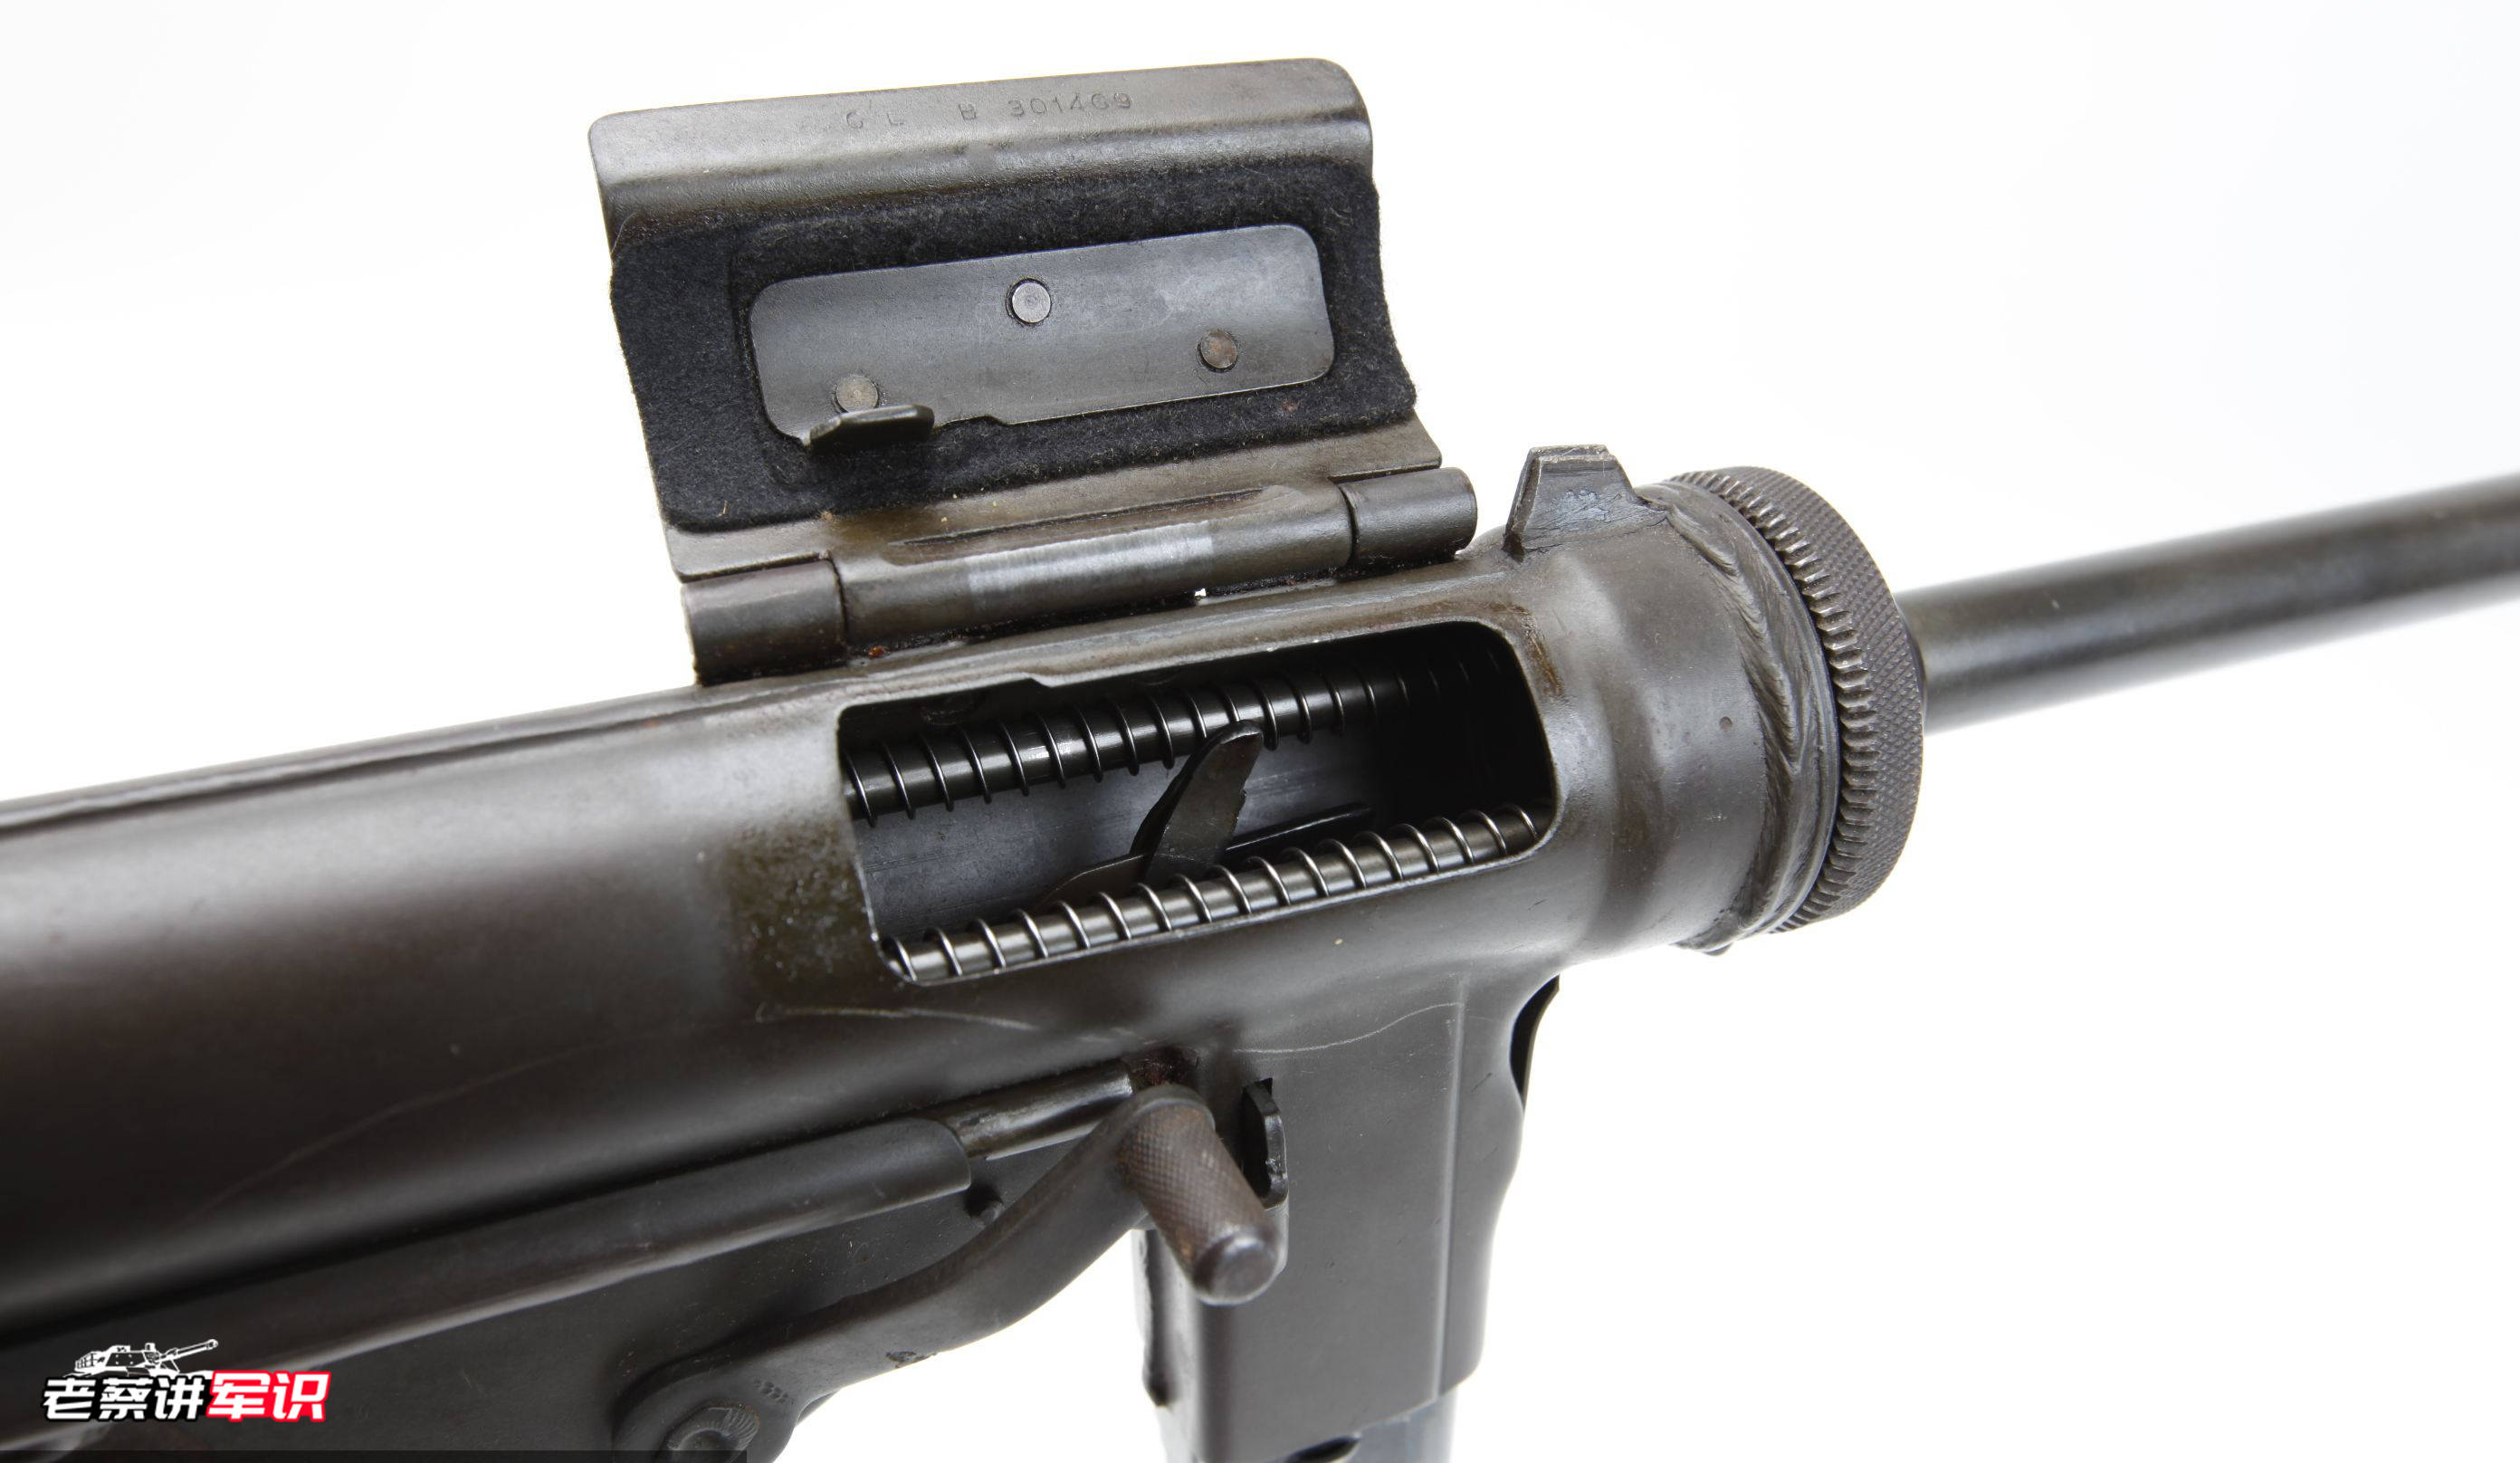 m3是一种自由枪机原理运作的开膛待击式风冷冲锋枪,只能在向上打开